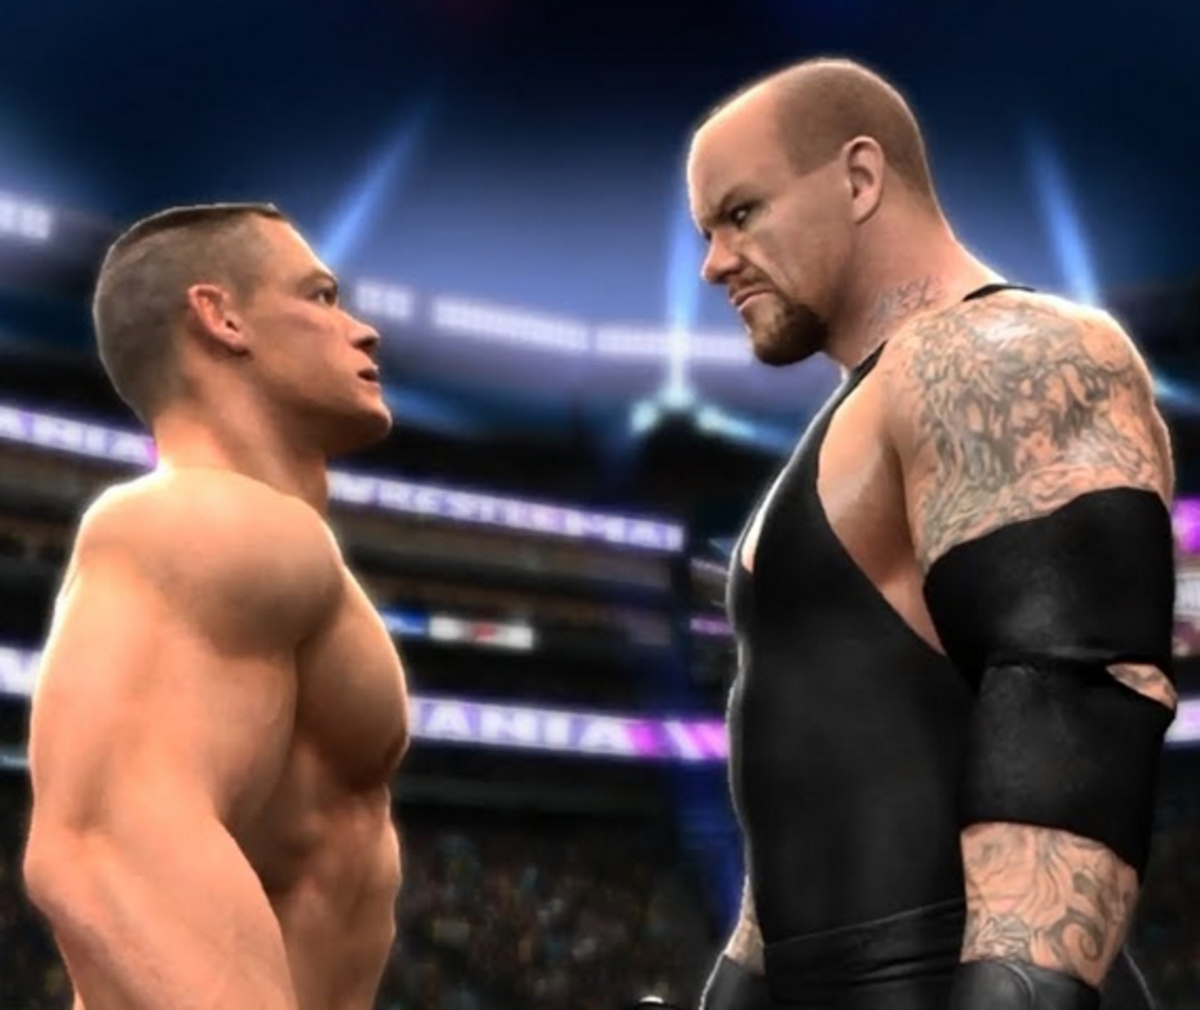 John Cena vs. Undertaker